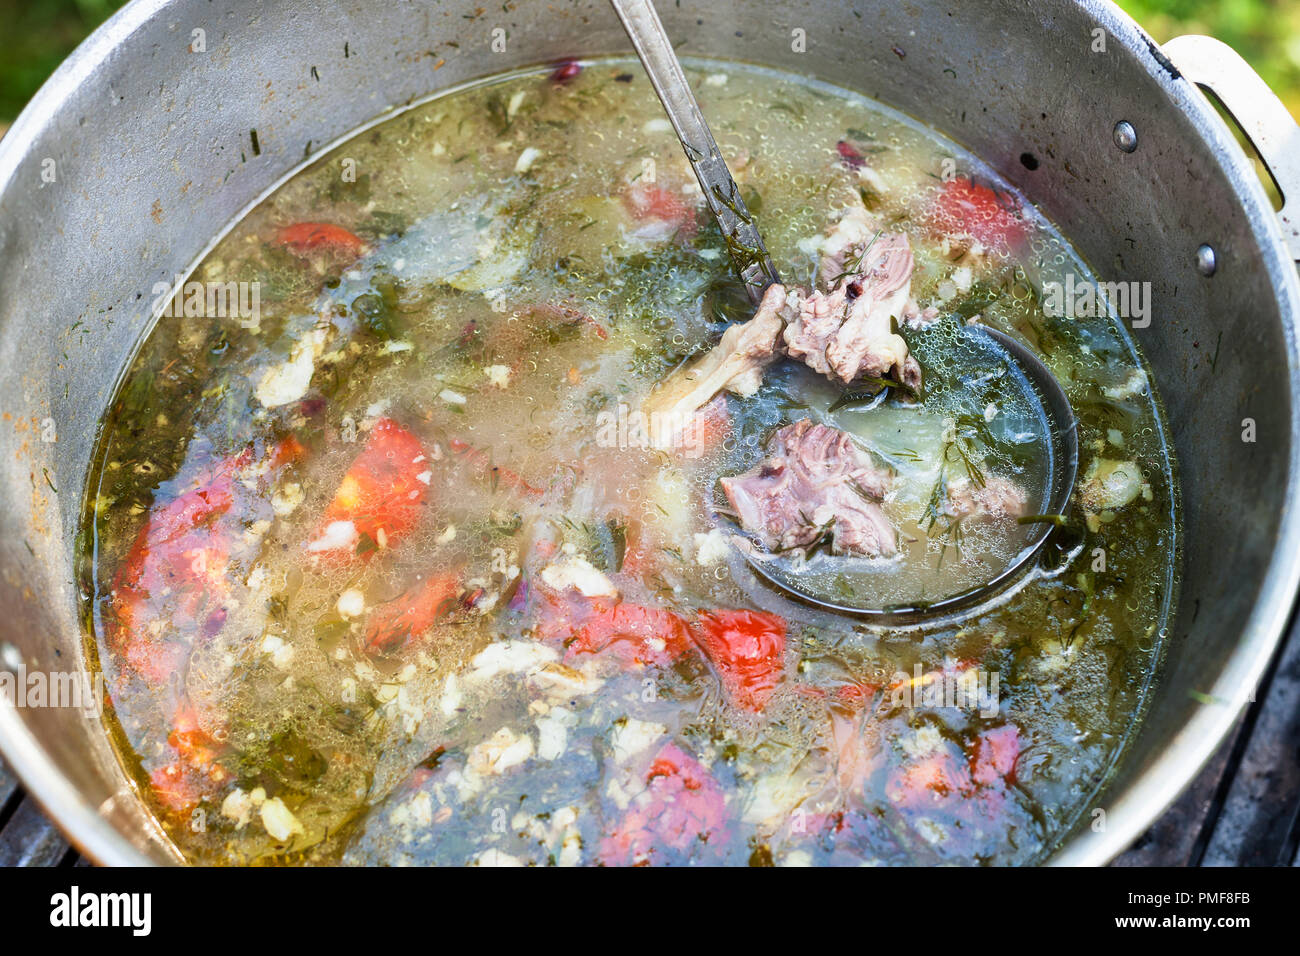 Vista superiore della cucina asiatica centrale shurpa (zuppa di carne e grandi fette di verdure) in pentola all'aperto Foto Stock